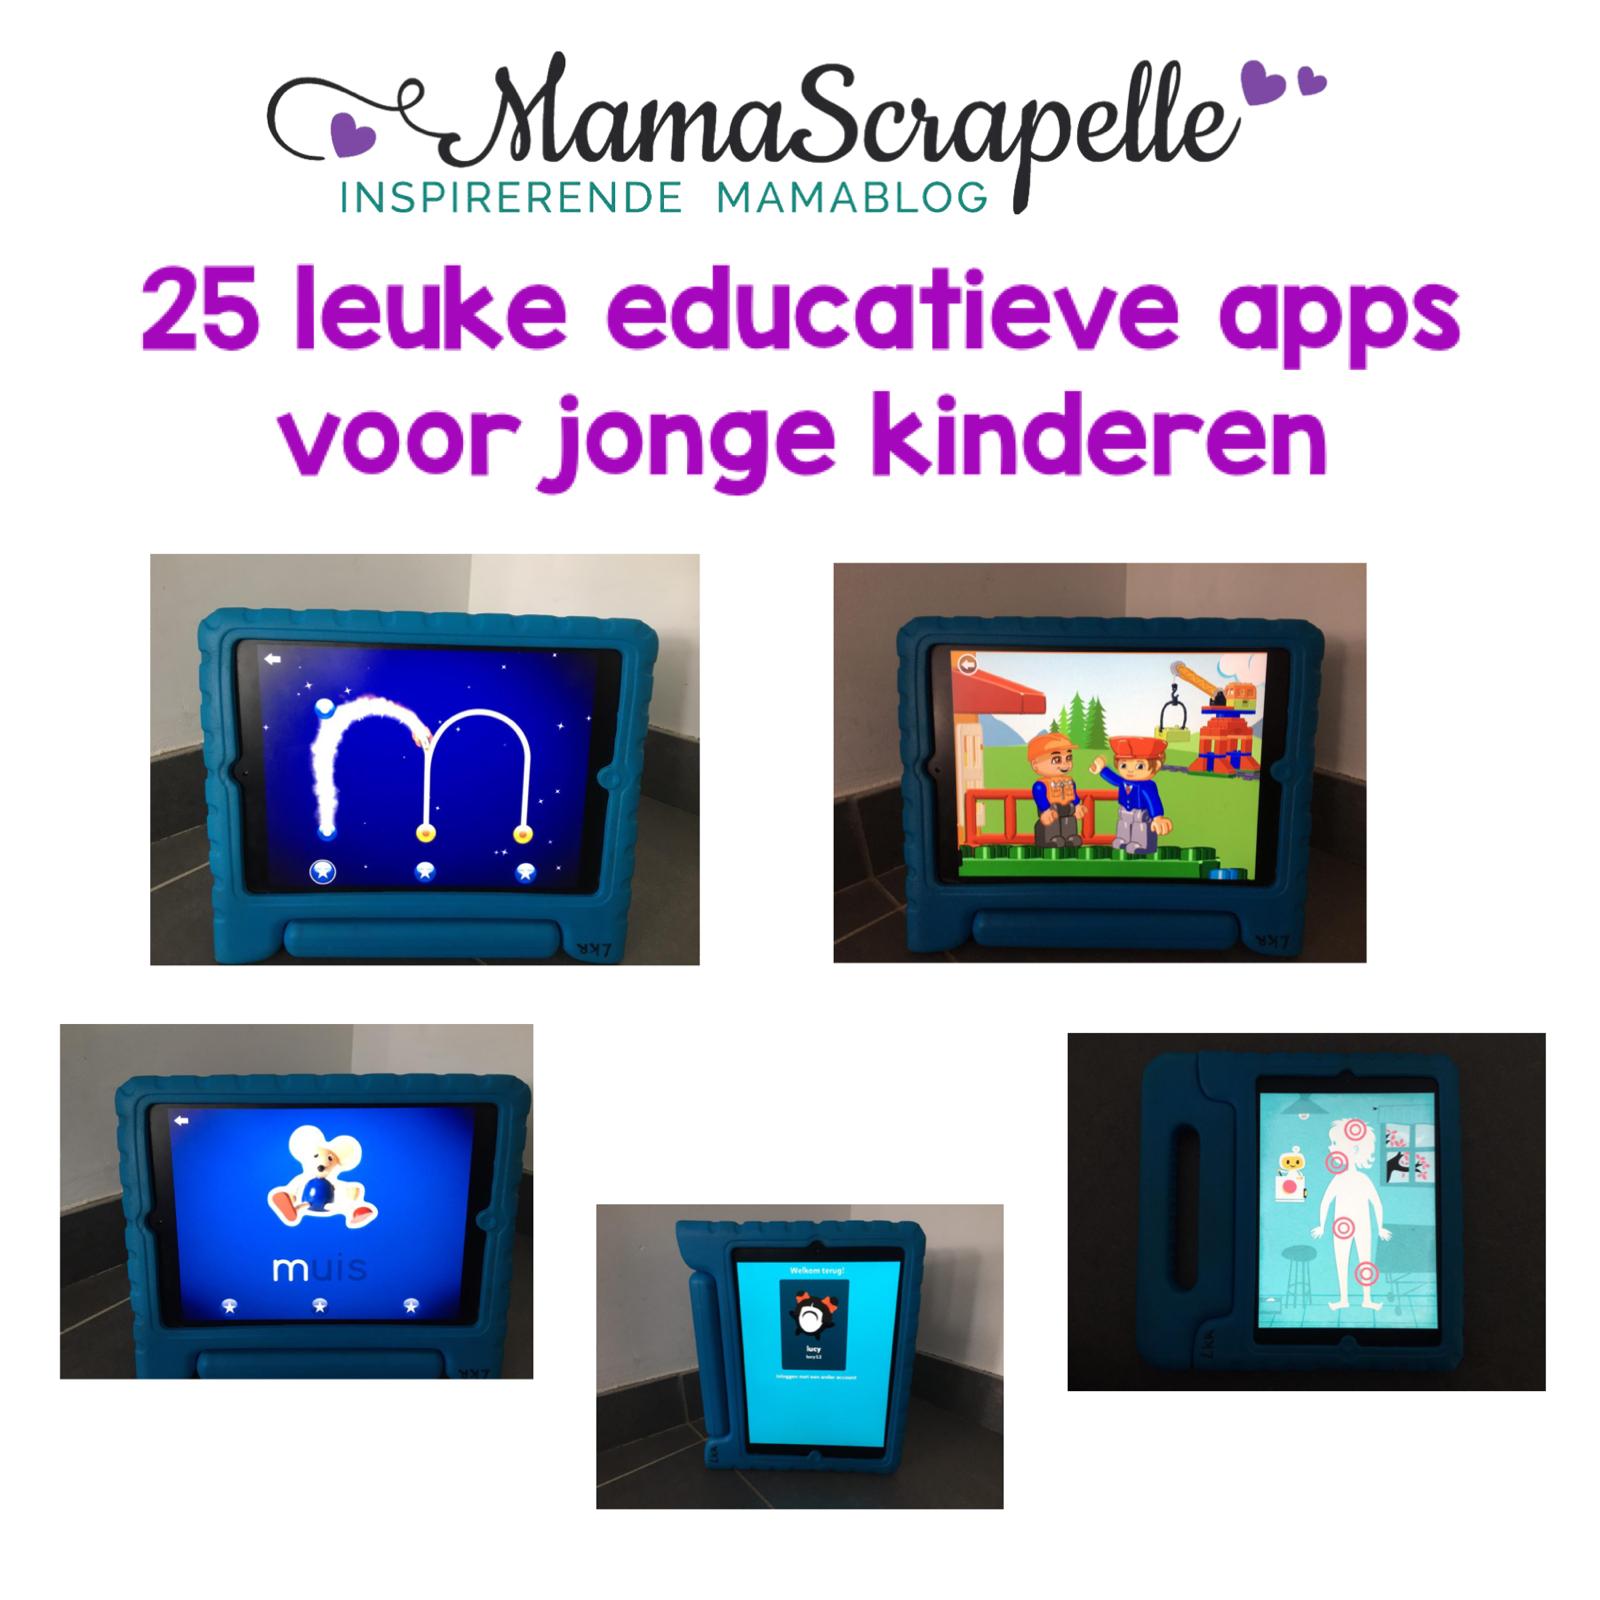 roterend Helder op doen alsof educatieve apps voor jonge kinderen een top 25 met de leukste!